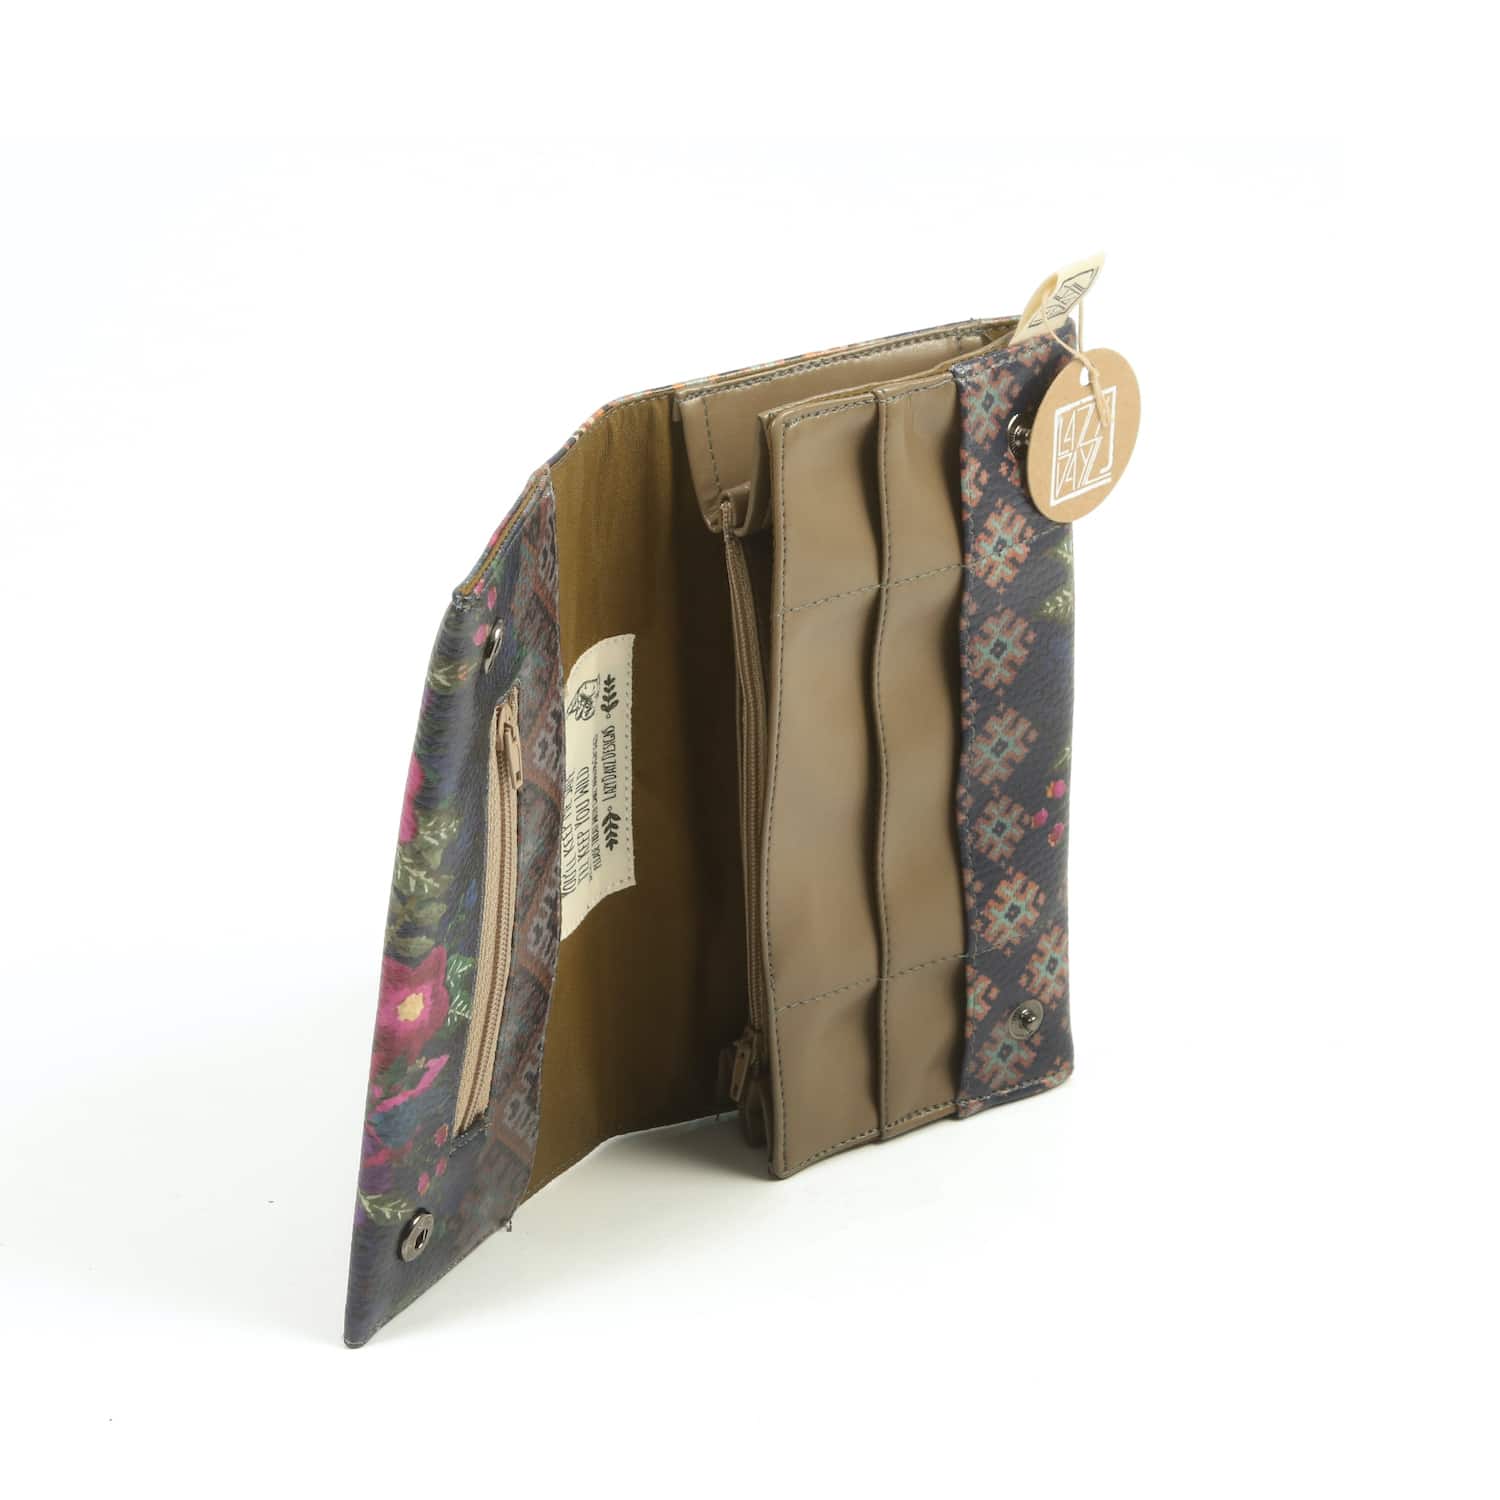 Γυναικείο πορτοφόλι από ψηφιακά εκτυπωμένη δερματίνη